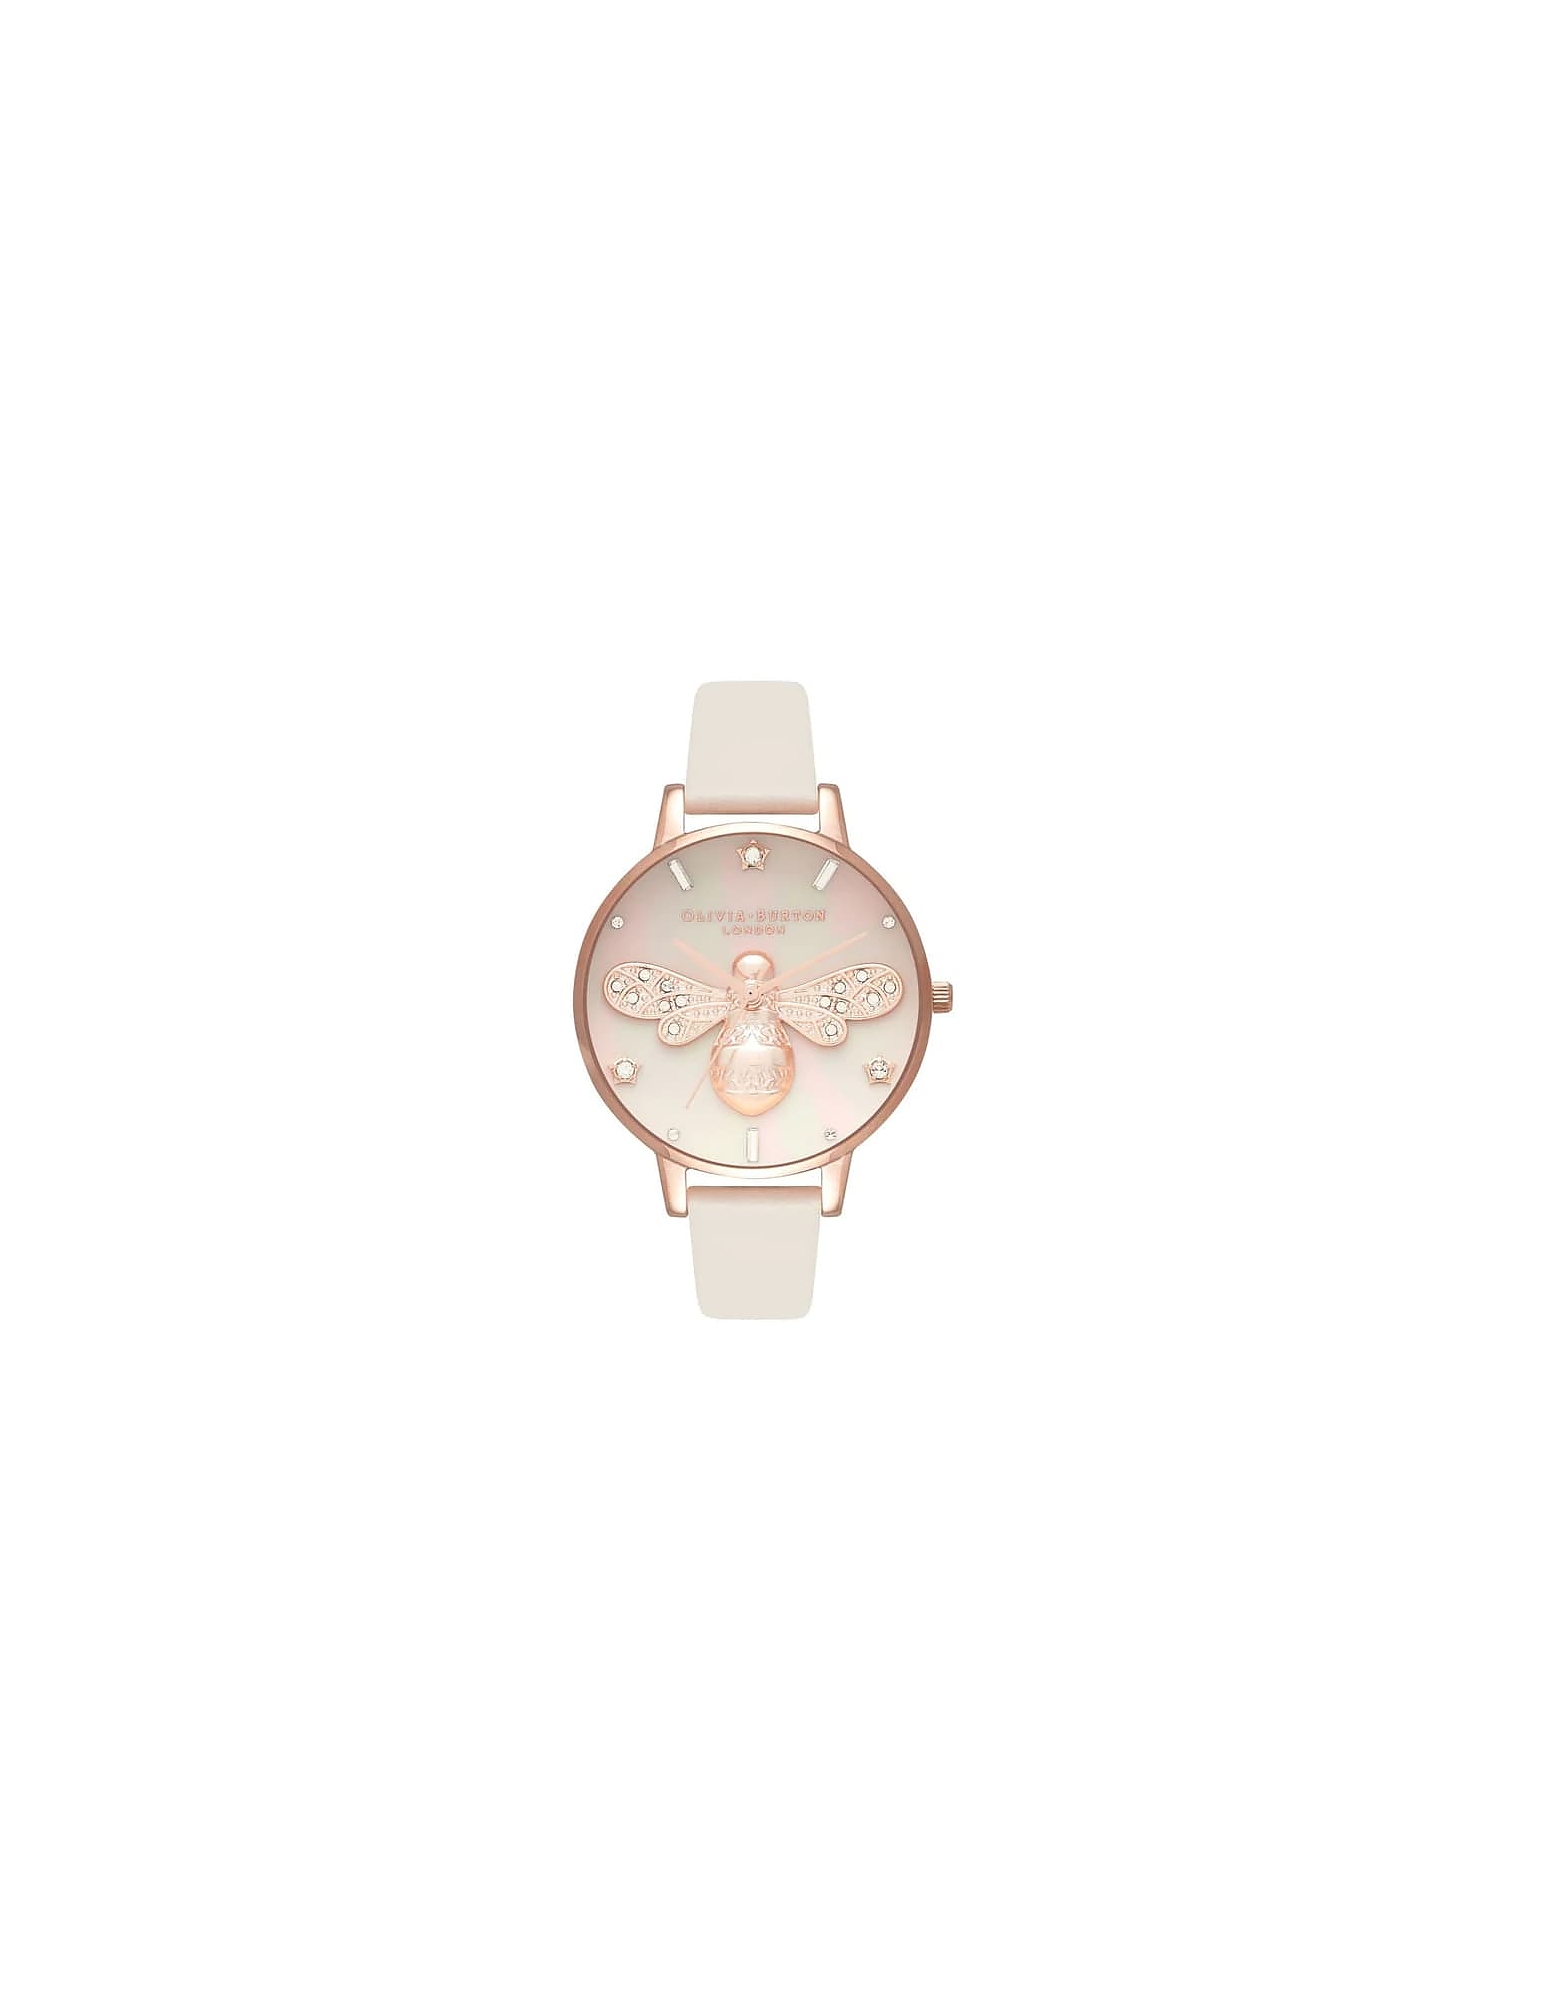 Olivia Burton Designer Women's Watches Women's Quartz Analogue Watch In Pink